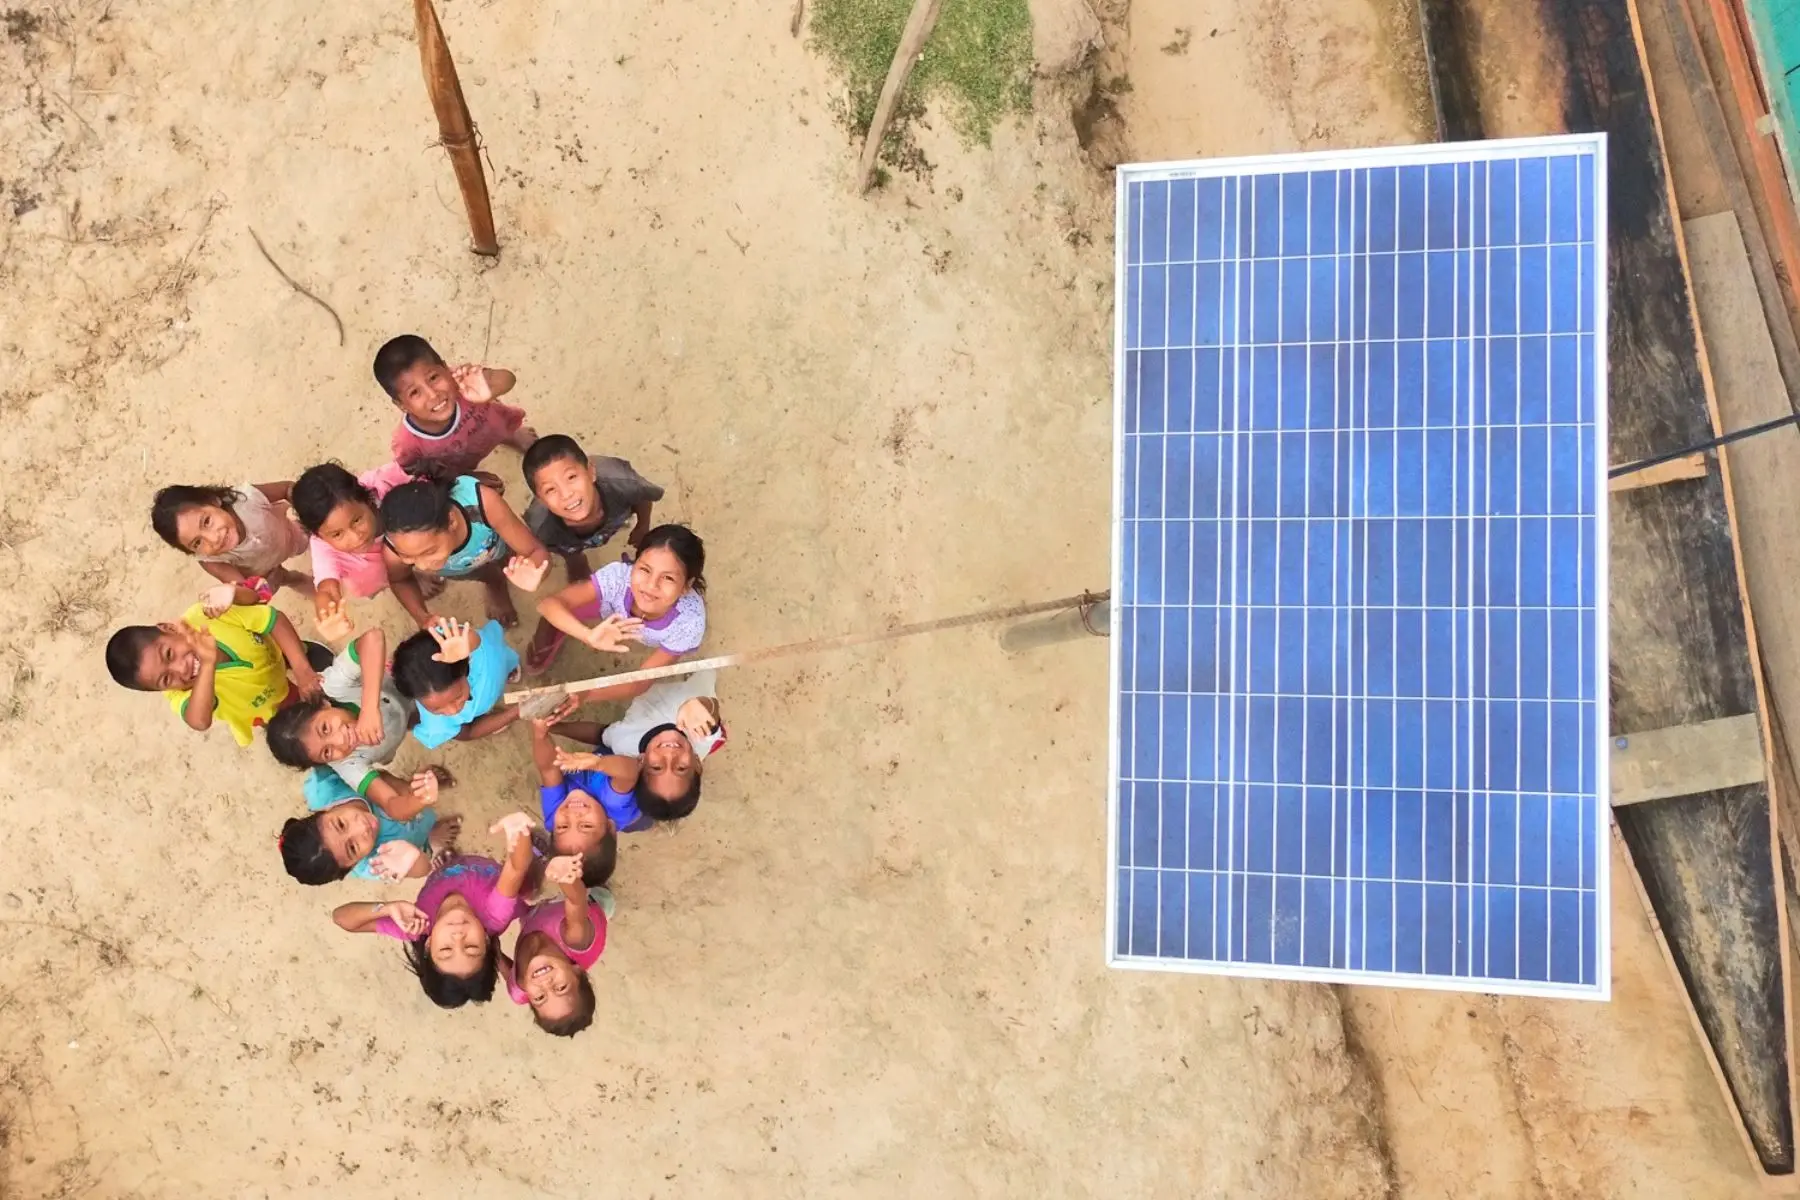 aplicaciones de la energia solar en el peru - Qué partes del Perú usan energías renovables